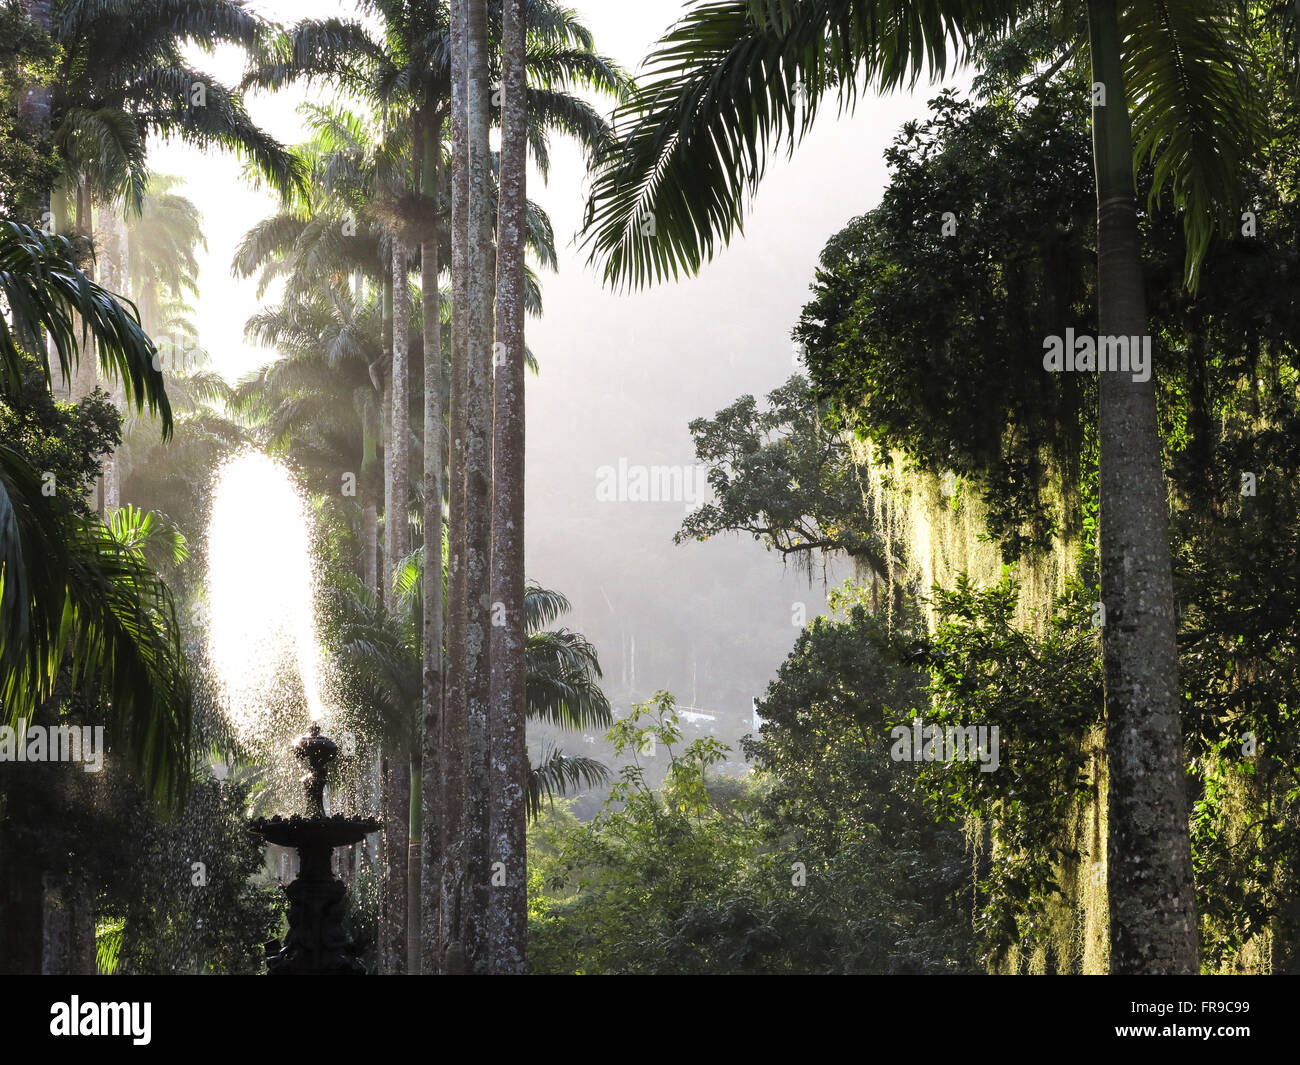 Imperial palms in the Botanical Garden of Rio de Janeiro Stock Photo